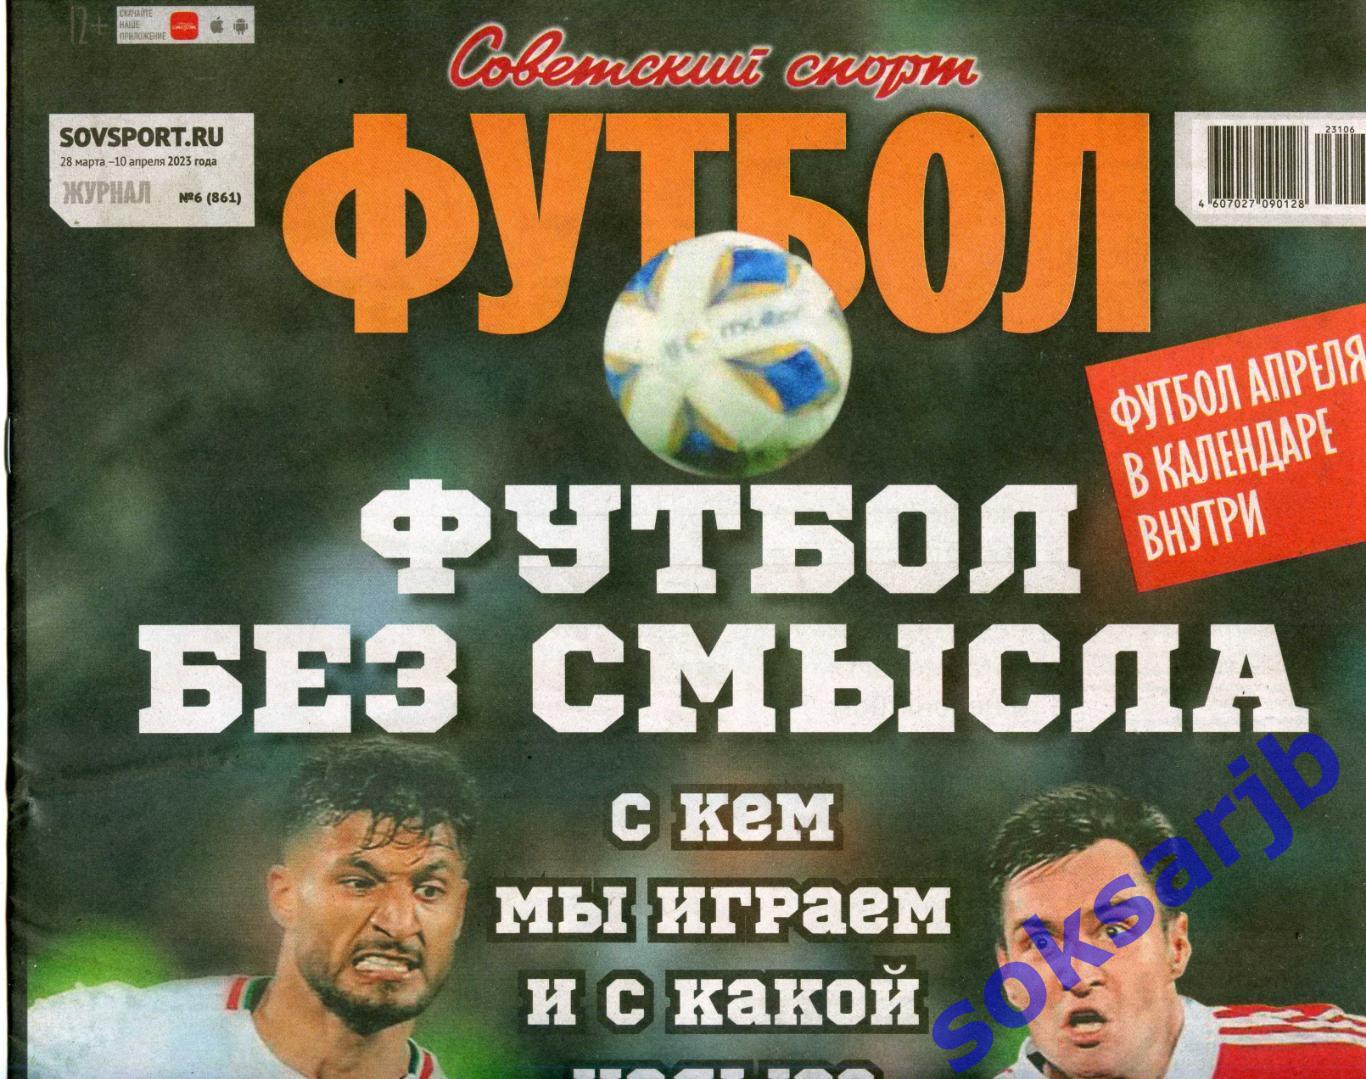 2023. Еженедельник Советский спорт - Футбол № 6 (861).